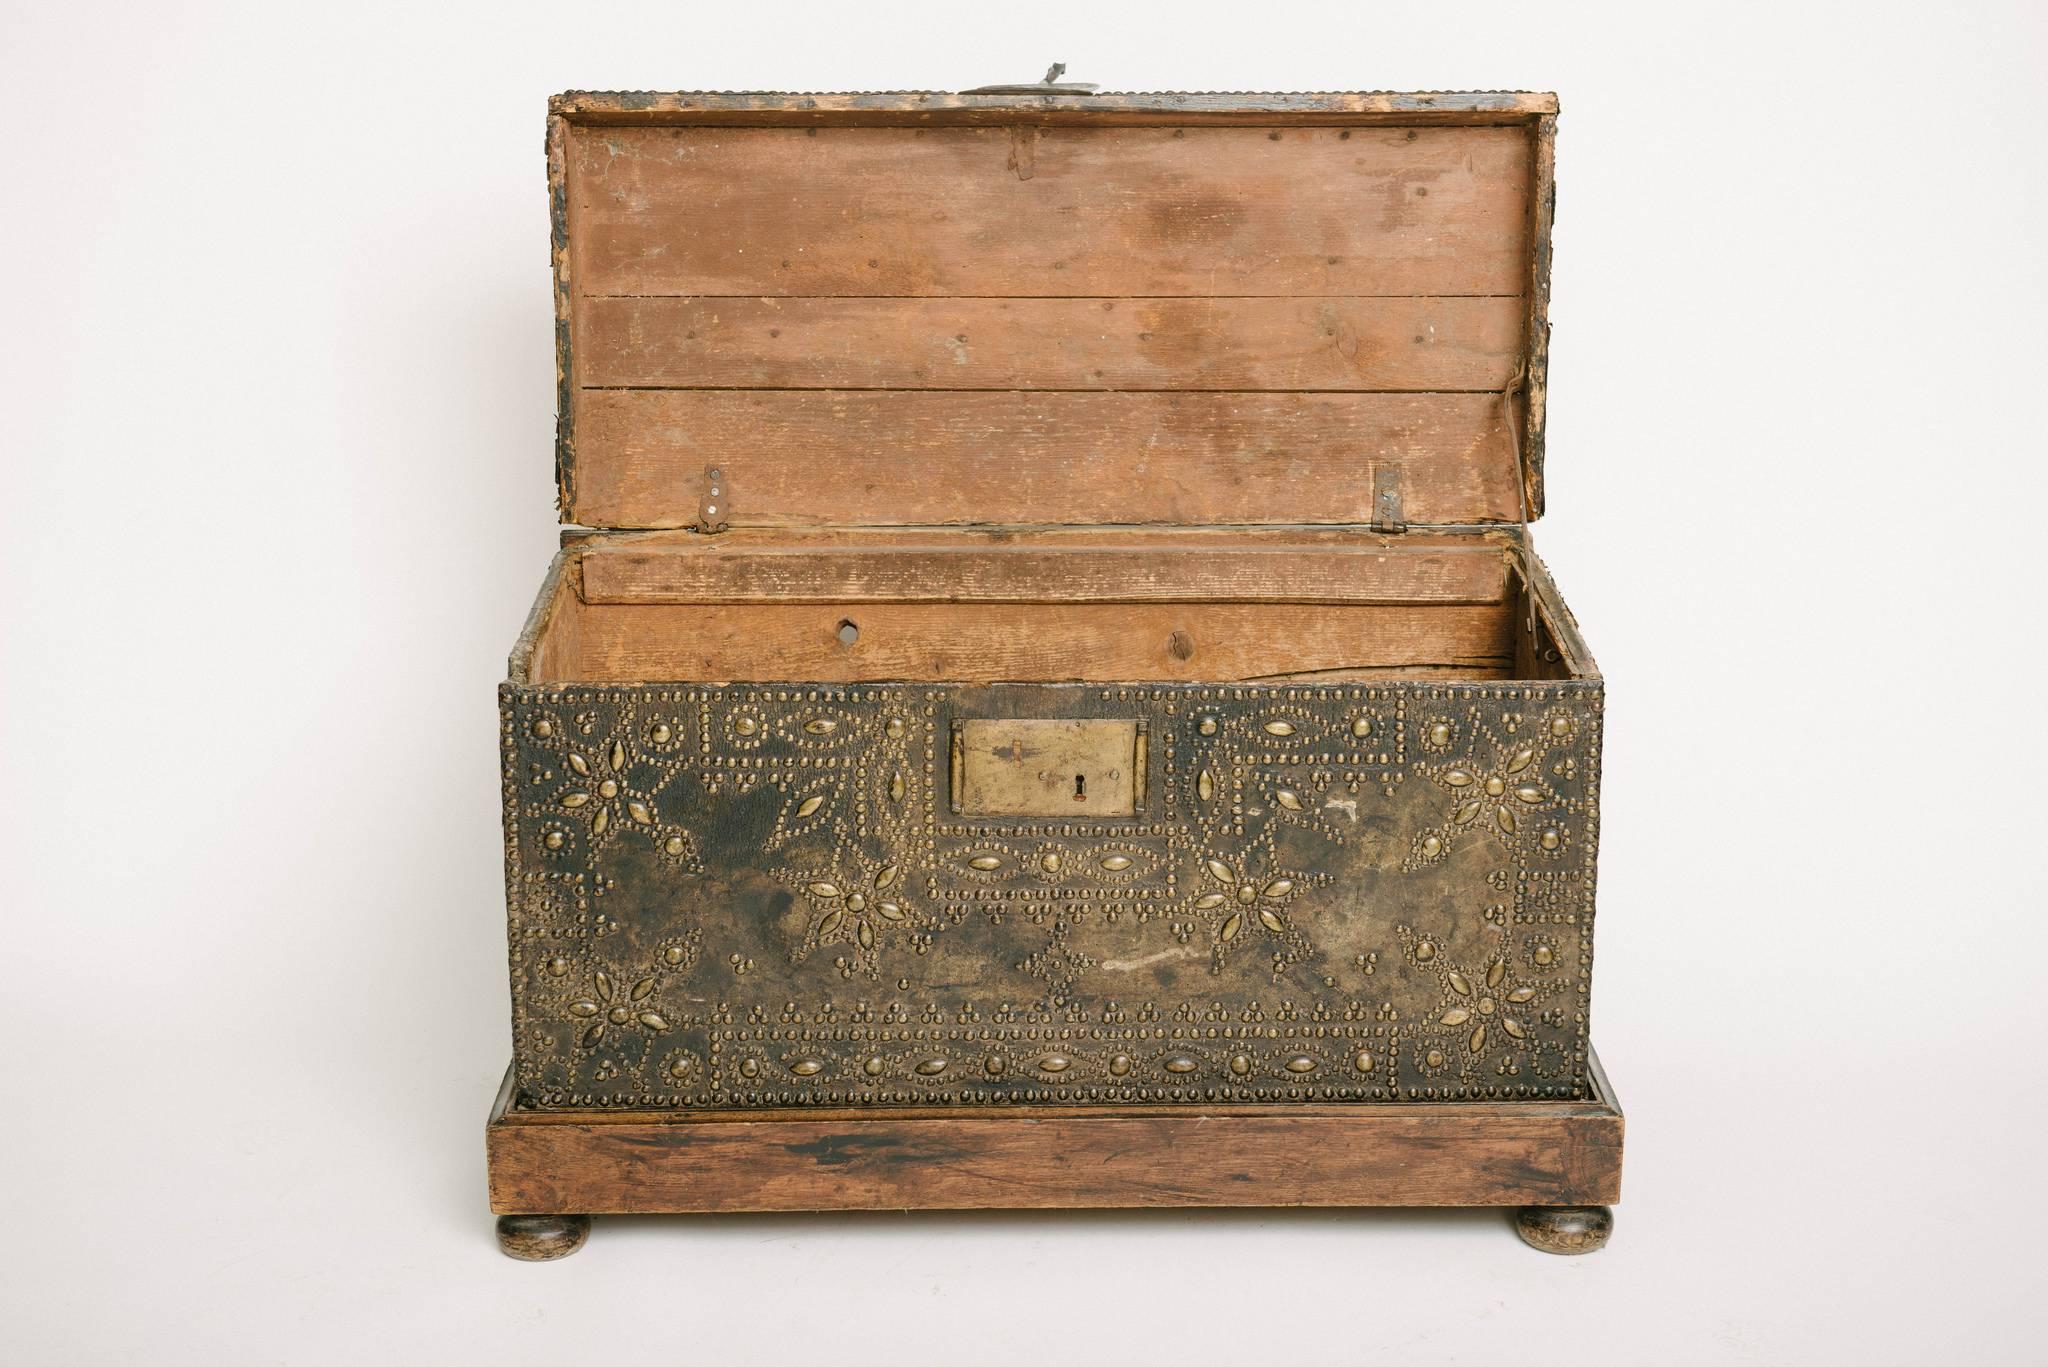 Französische Lederkiste, Truhe oder Koffer aus dem 17. Jahrhundert mit weinrotem Nagelkopf auf neuerem Holzsockel.
  